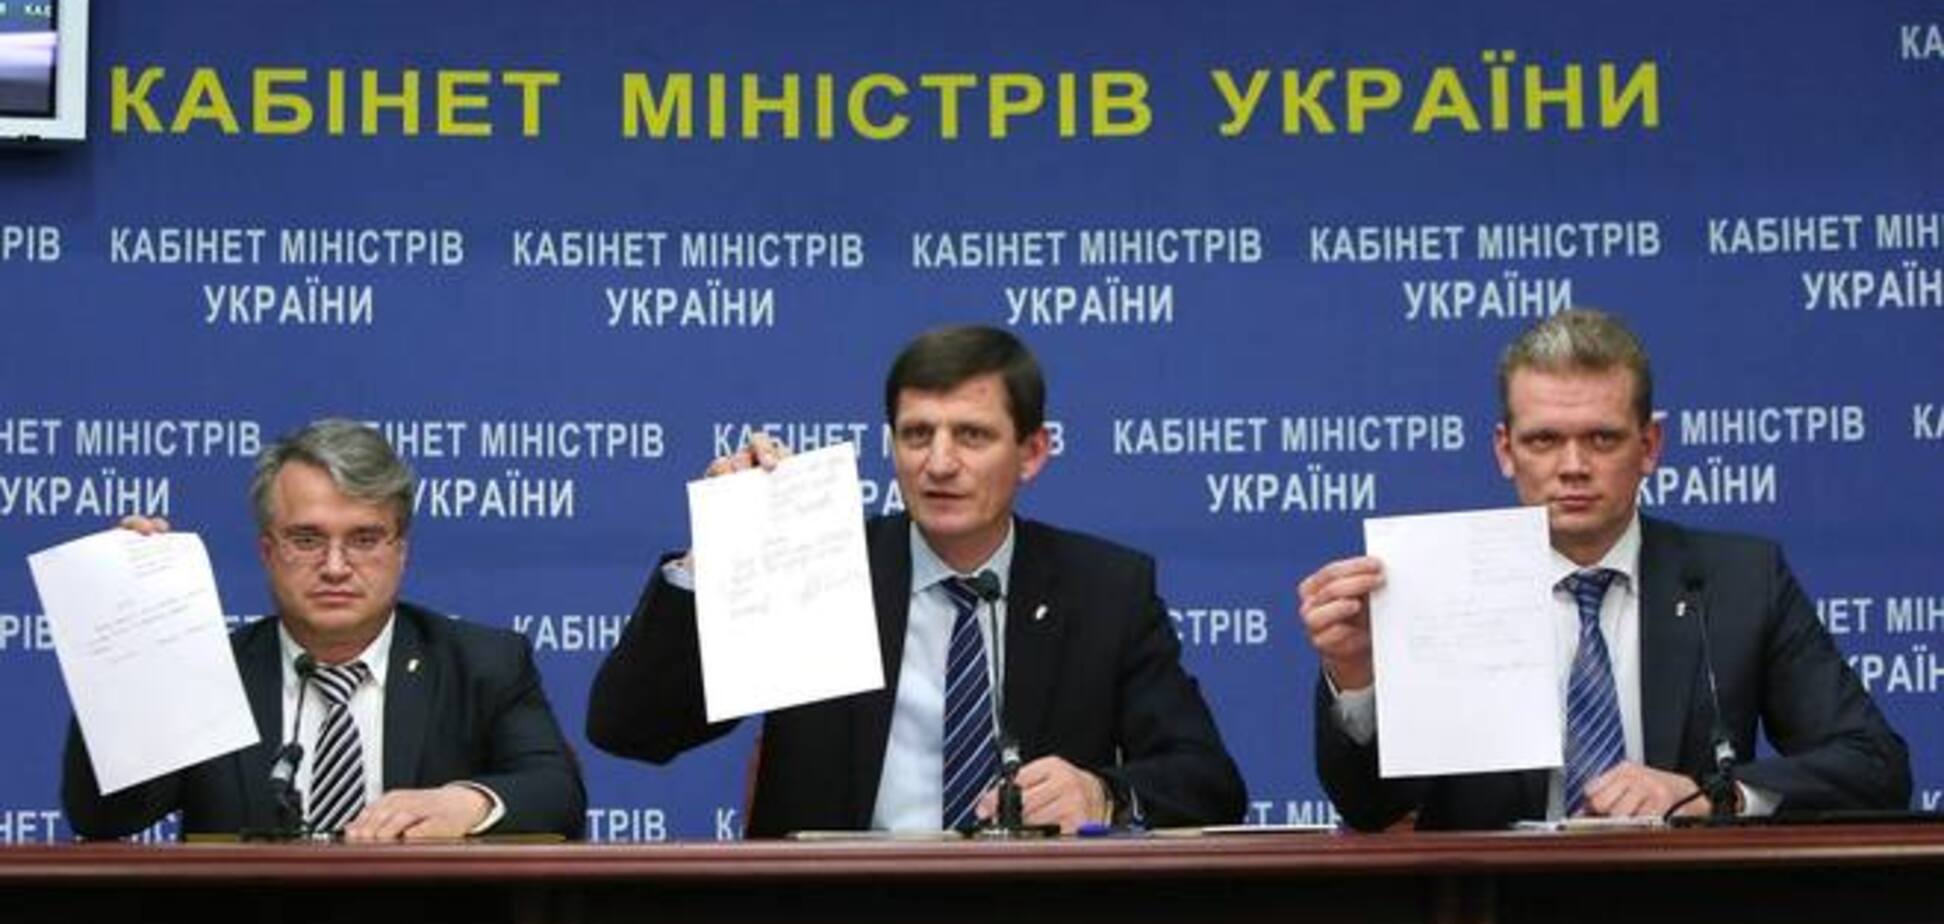 Міністри від 'Свободи' пішли з уряду Яценюка: опубліковано фото